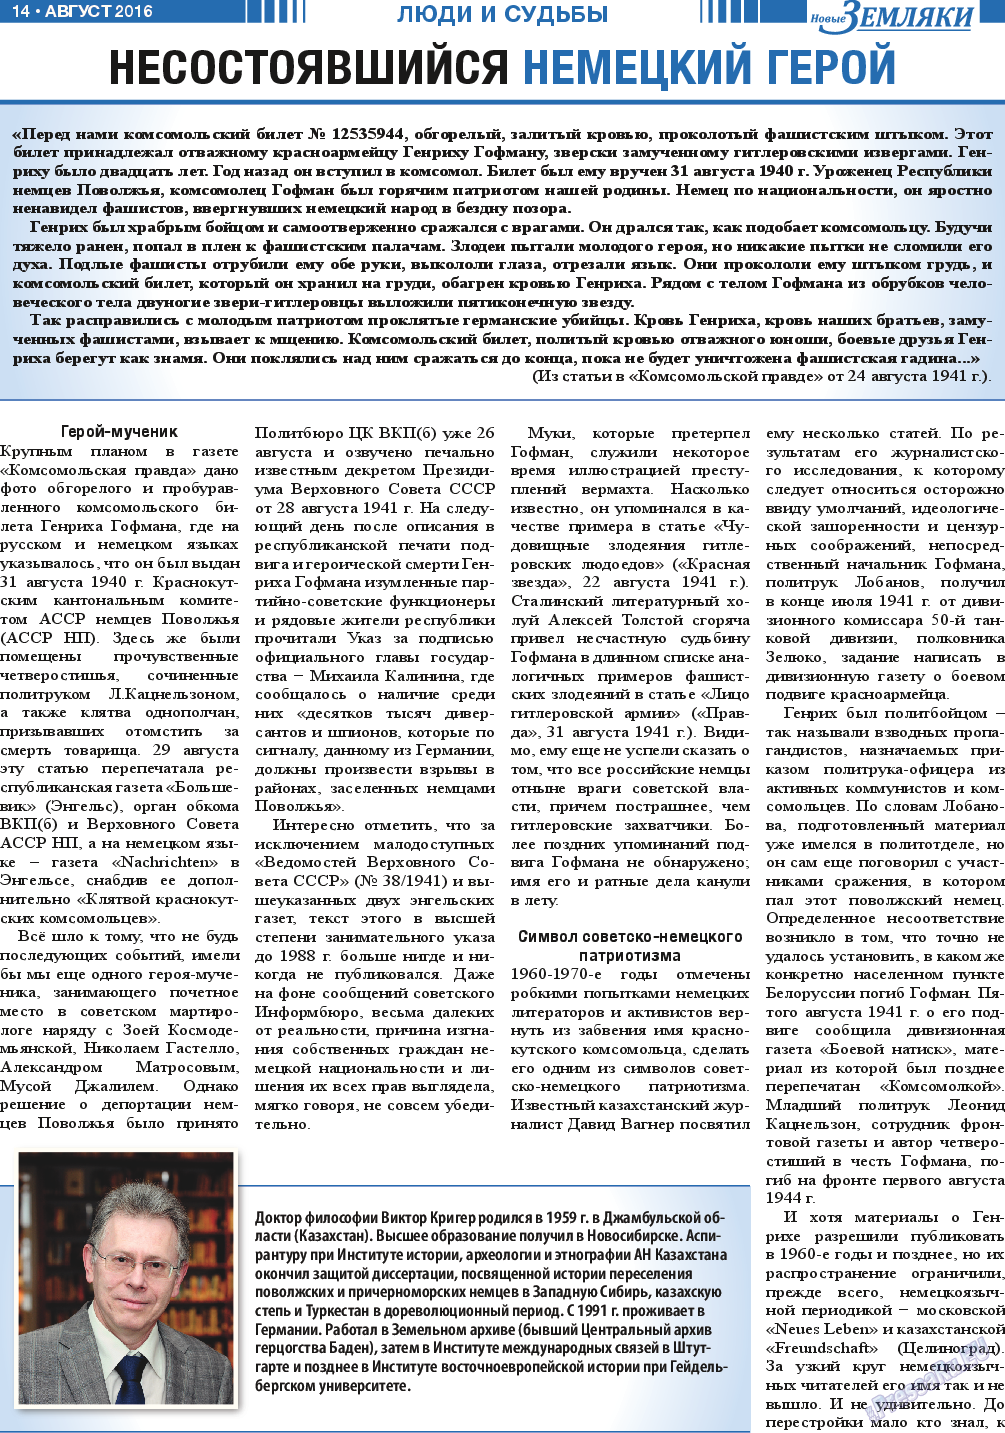 Новые Земляки, газета. 2016 №8 стр.14